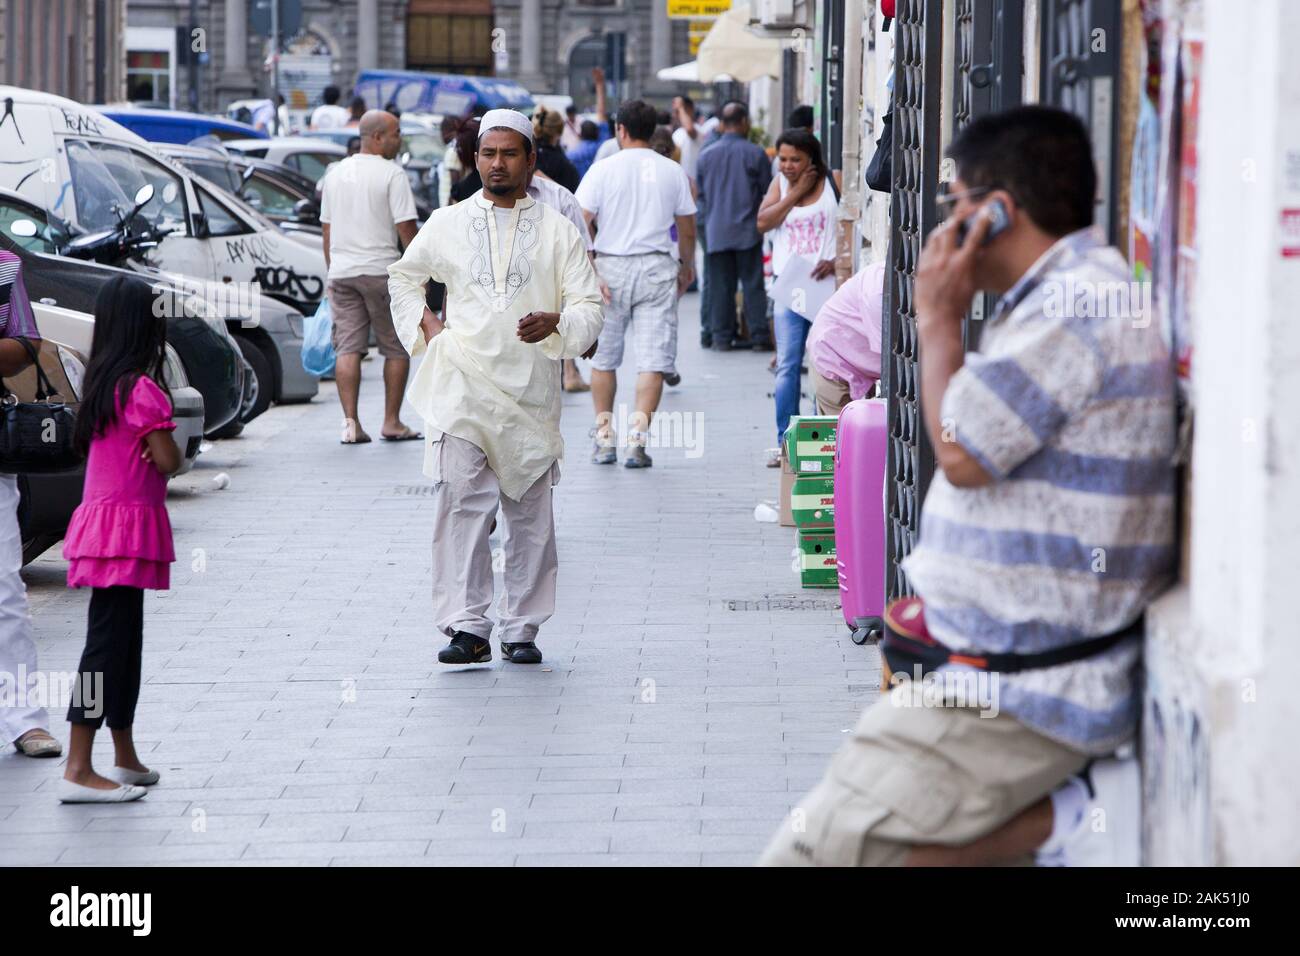 Multikulturelles Treiben auf der Via Principe Amadeo, Rom | usage worldwide Stock Photo